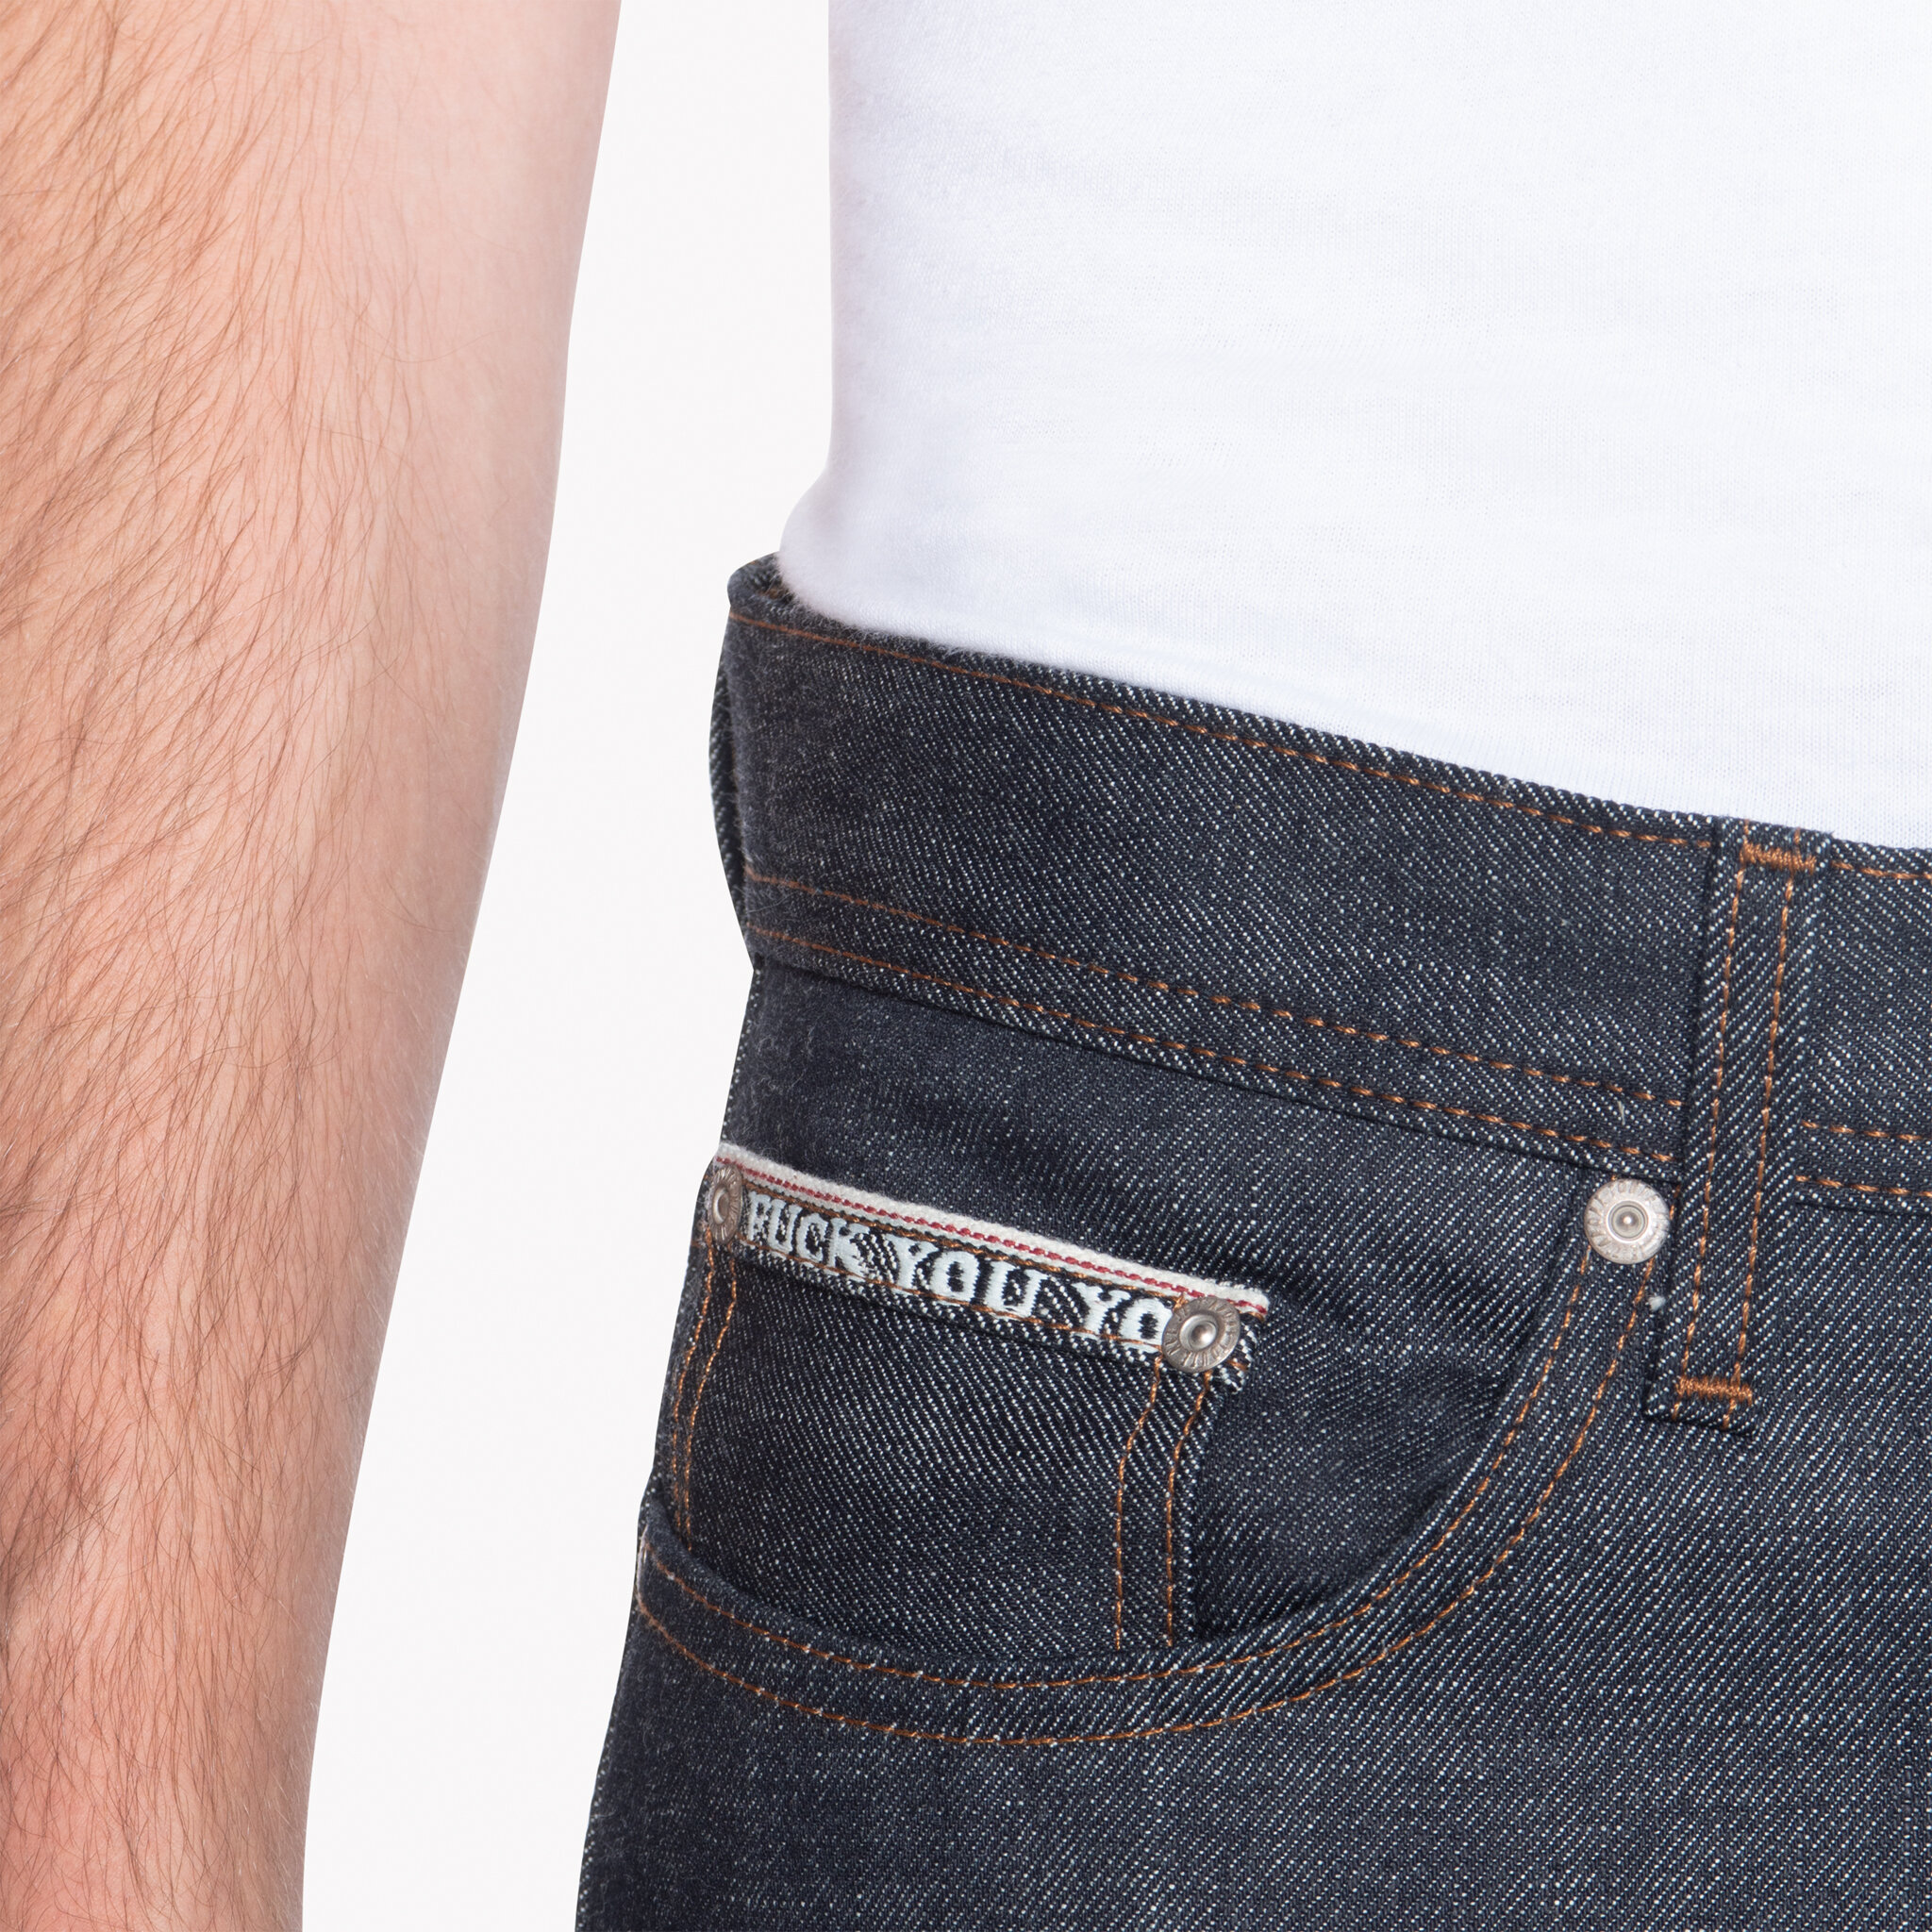  Vulgar Selvedge 3 jeans - coin pocket 